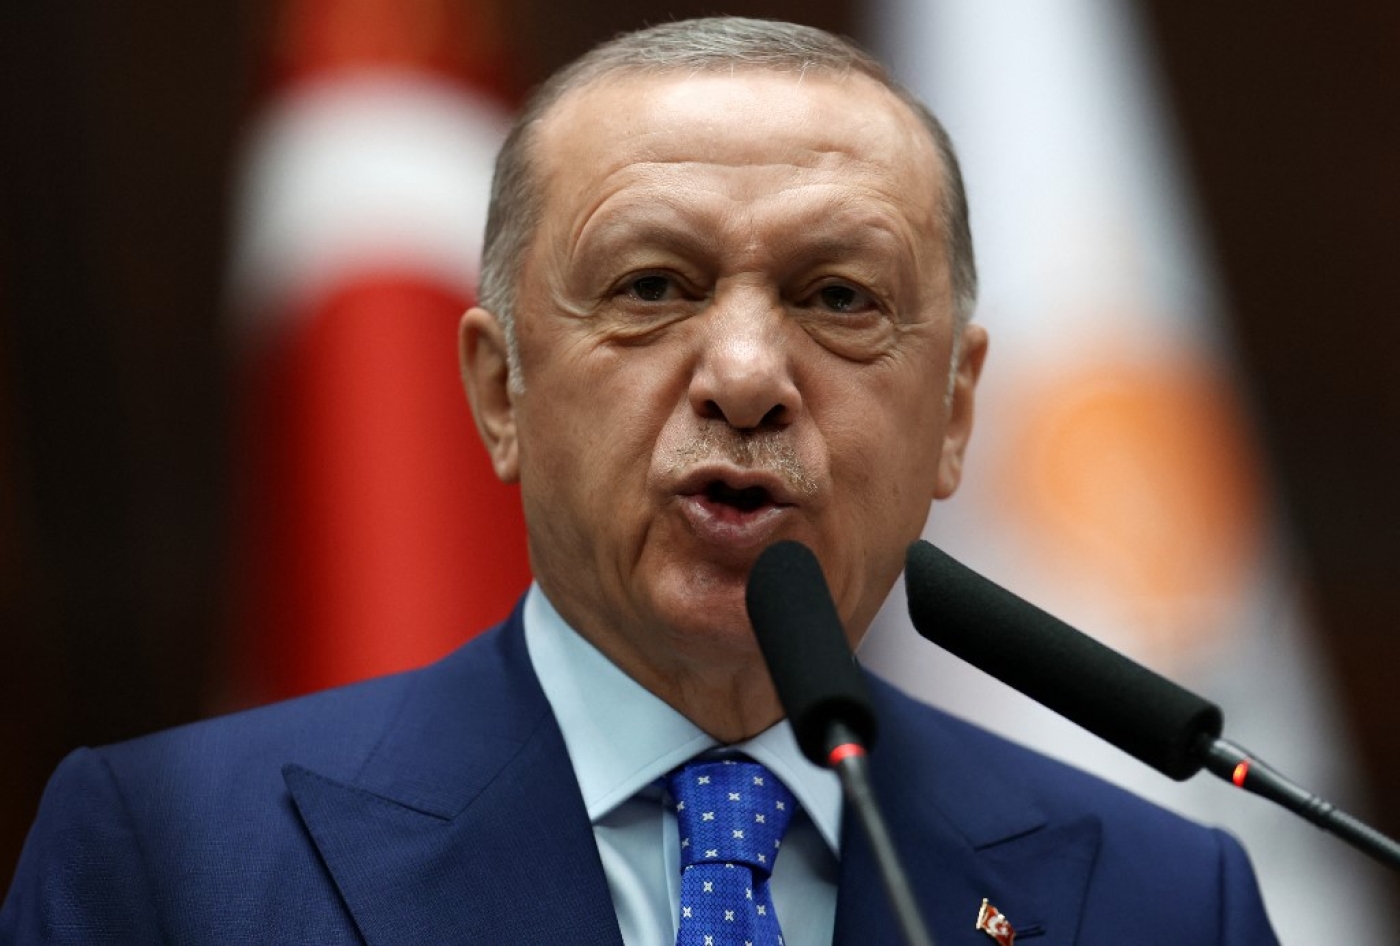 Le président turc Recep Tayyip Erdoğan lors d’une réunion de groupe à la Grande Assemblée nationale de Turquie, à Ankara, le 18 mai 2022 (AFP/Adem Altan)